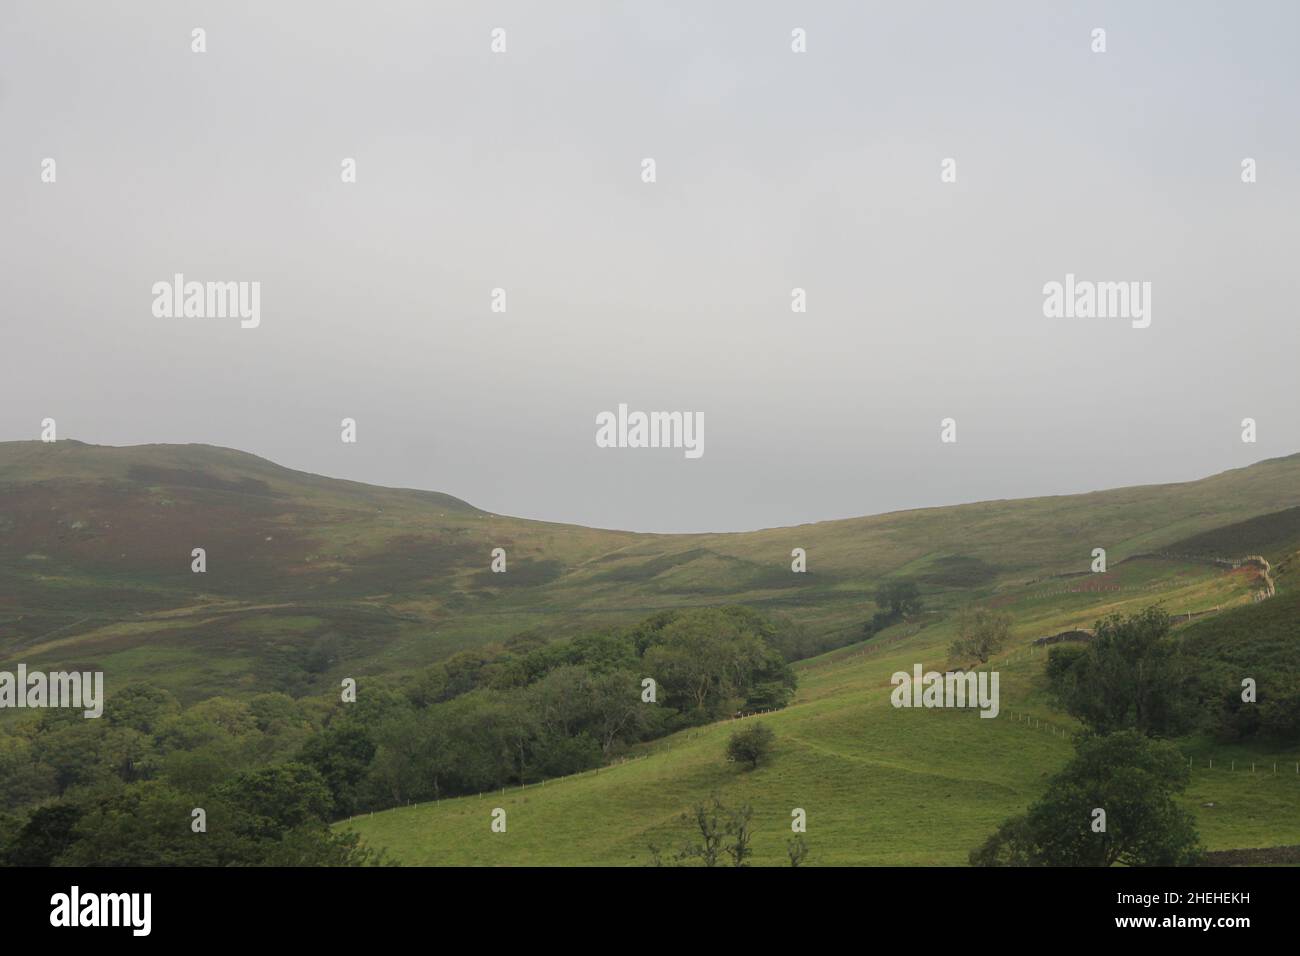 Nebel bedeckt die Gipfel der Hügel in Schottland. Reise- und Tourismuskonzept Stockfoto